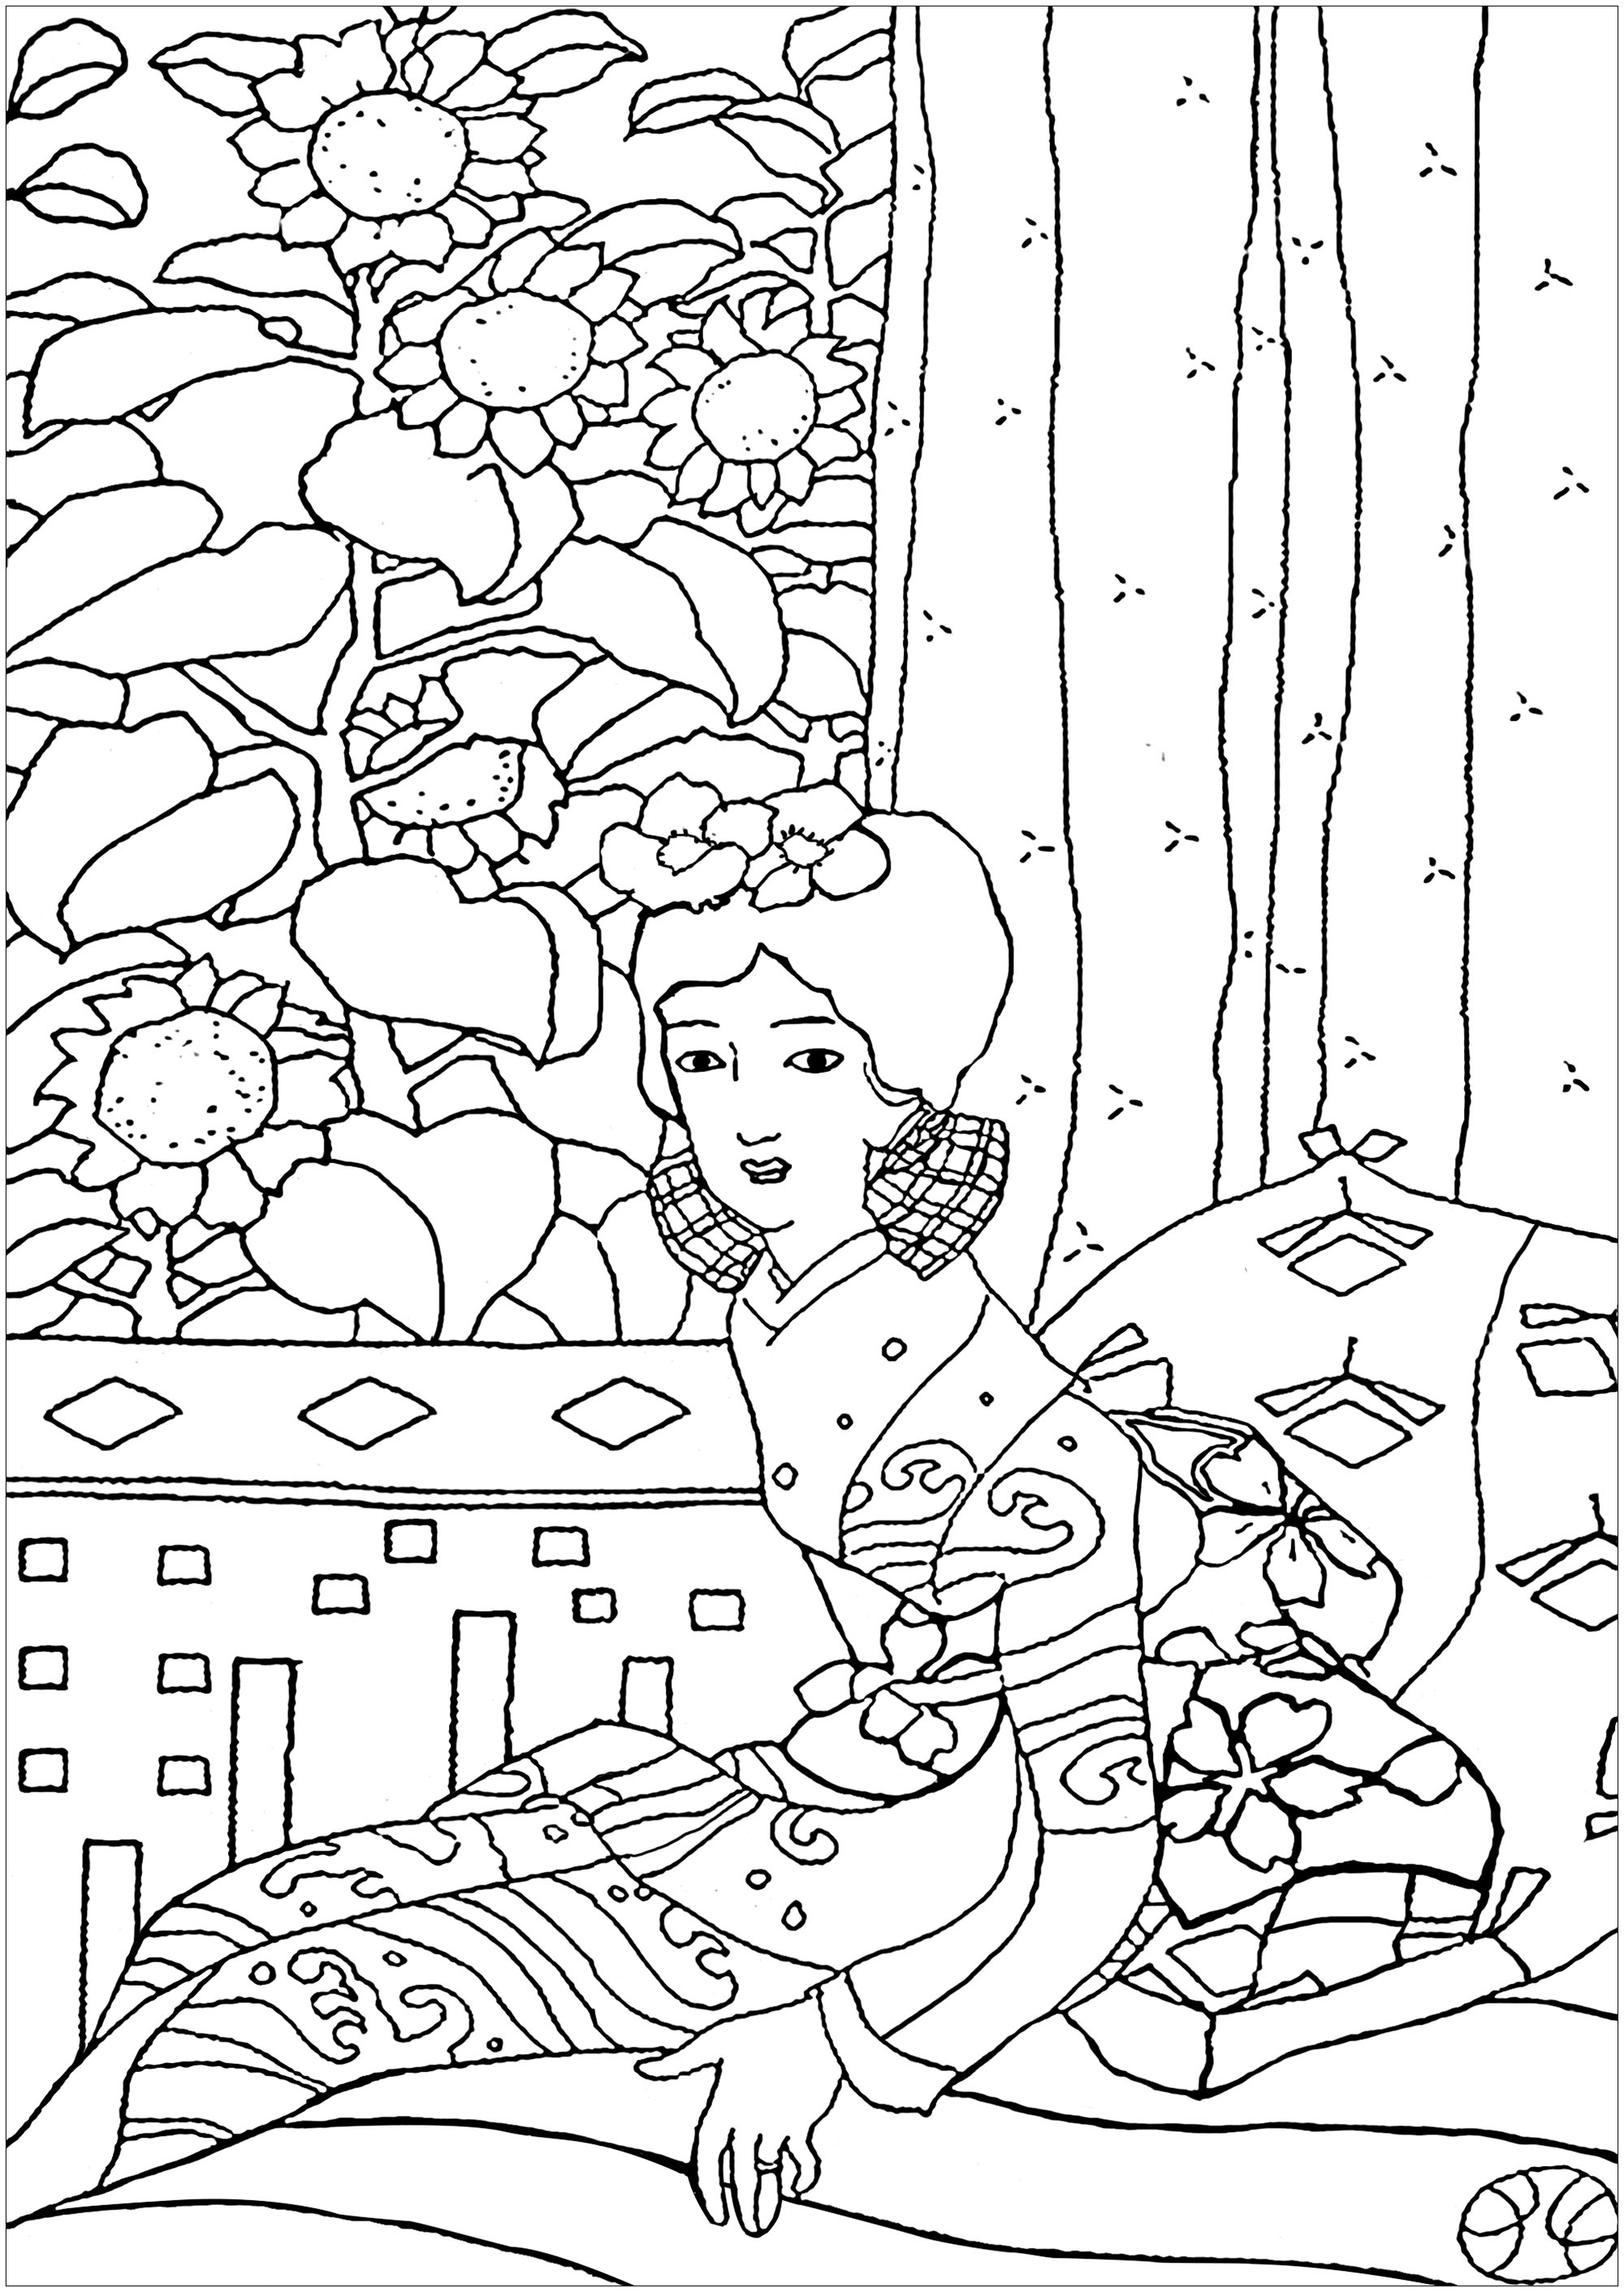 Disegni da colorare per adulti : Giappone - 1, Artista : Art'Isabelle